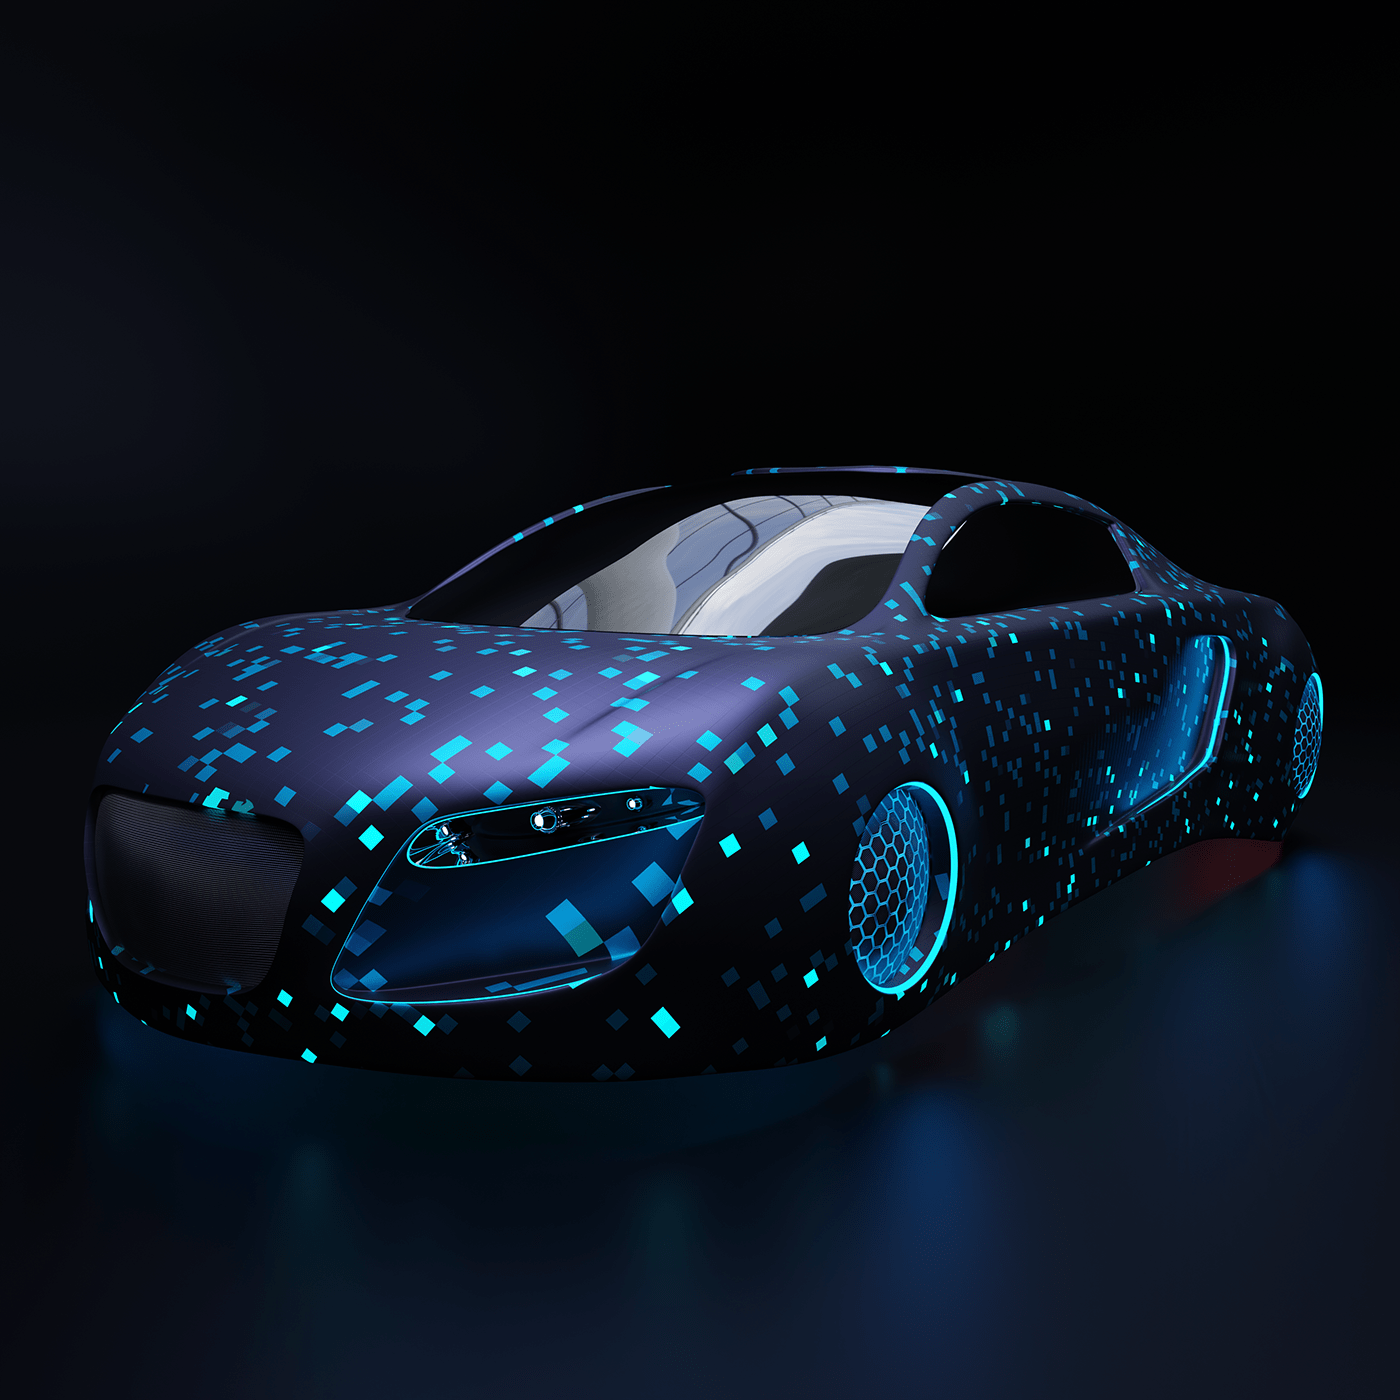 Audi audirsq blender blenderdesign car cardesign creative futuristic Scifi supercar